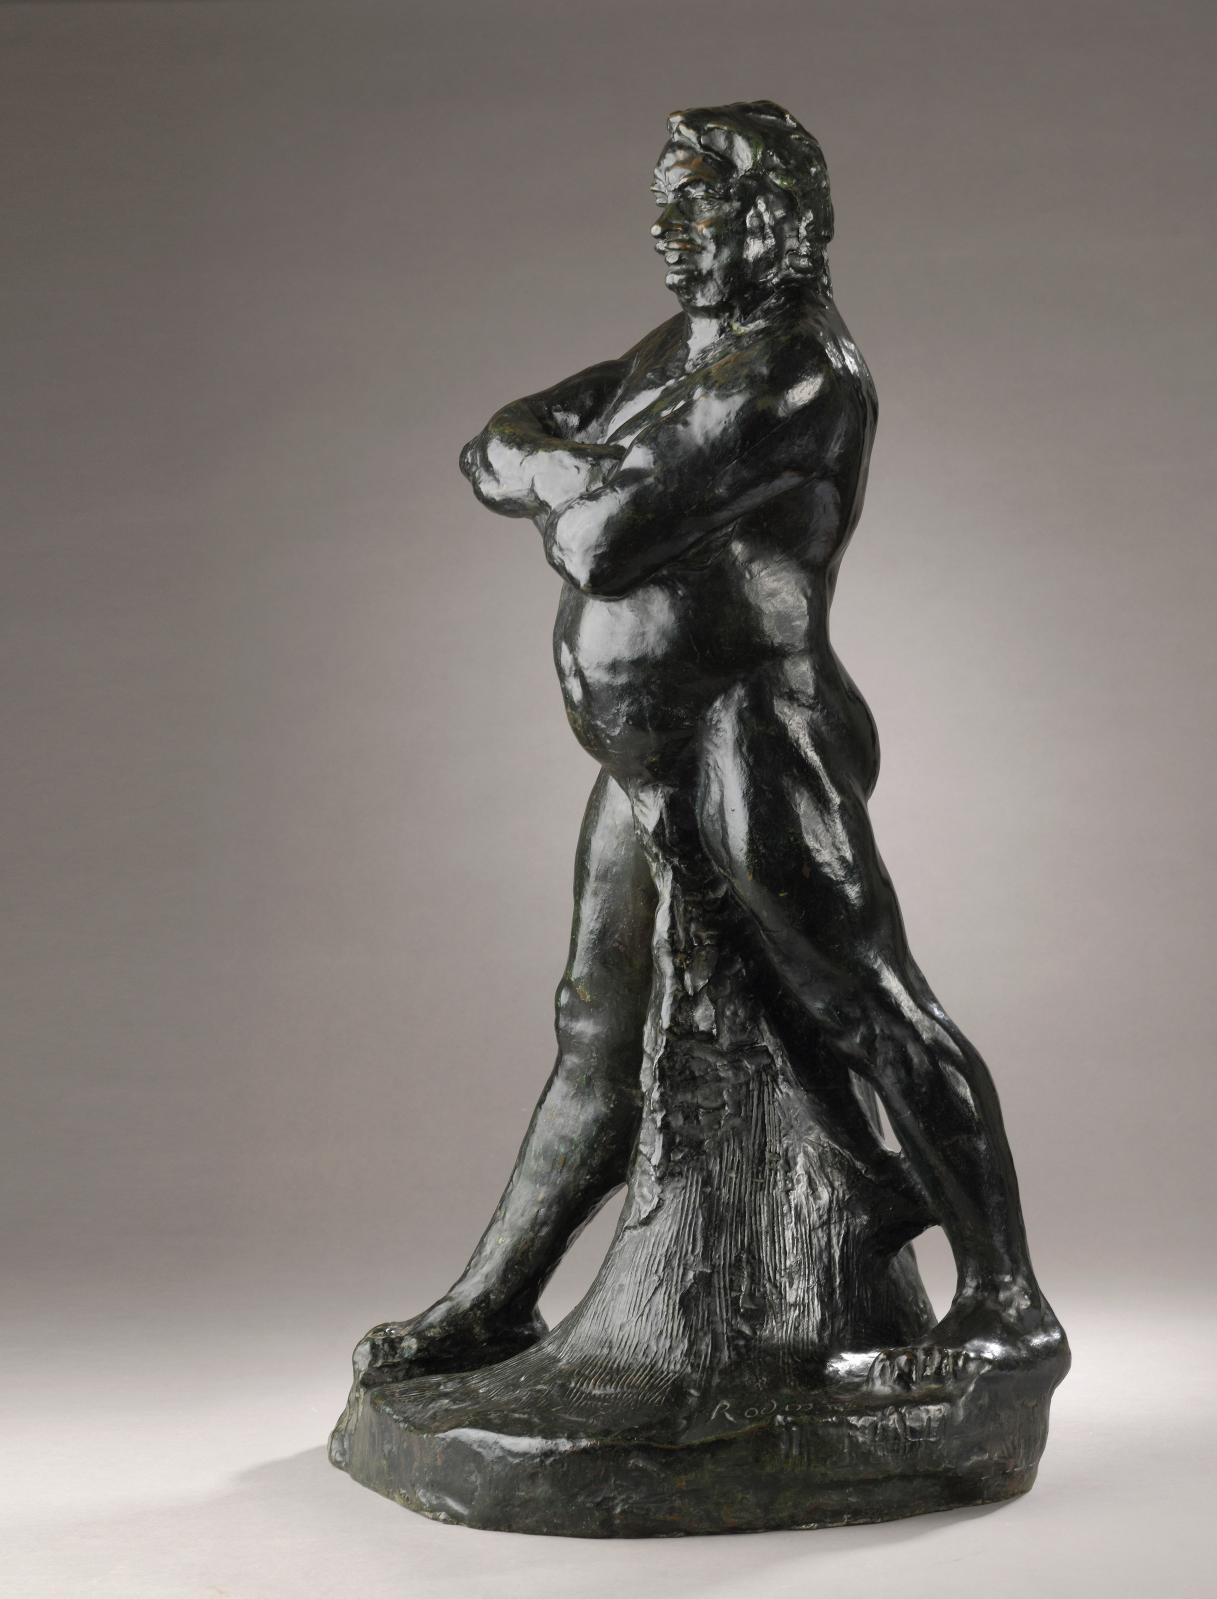  Balzac par Rodin, le choc des titans